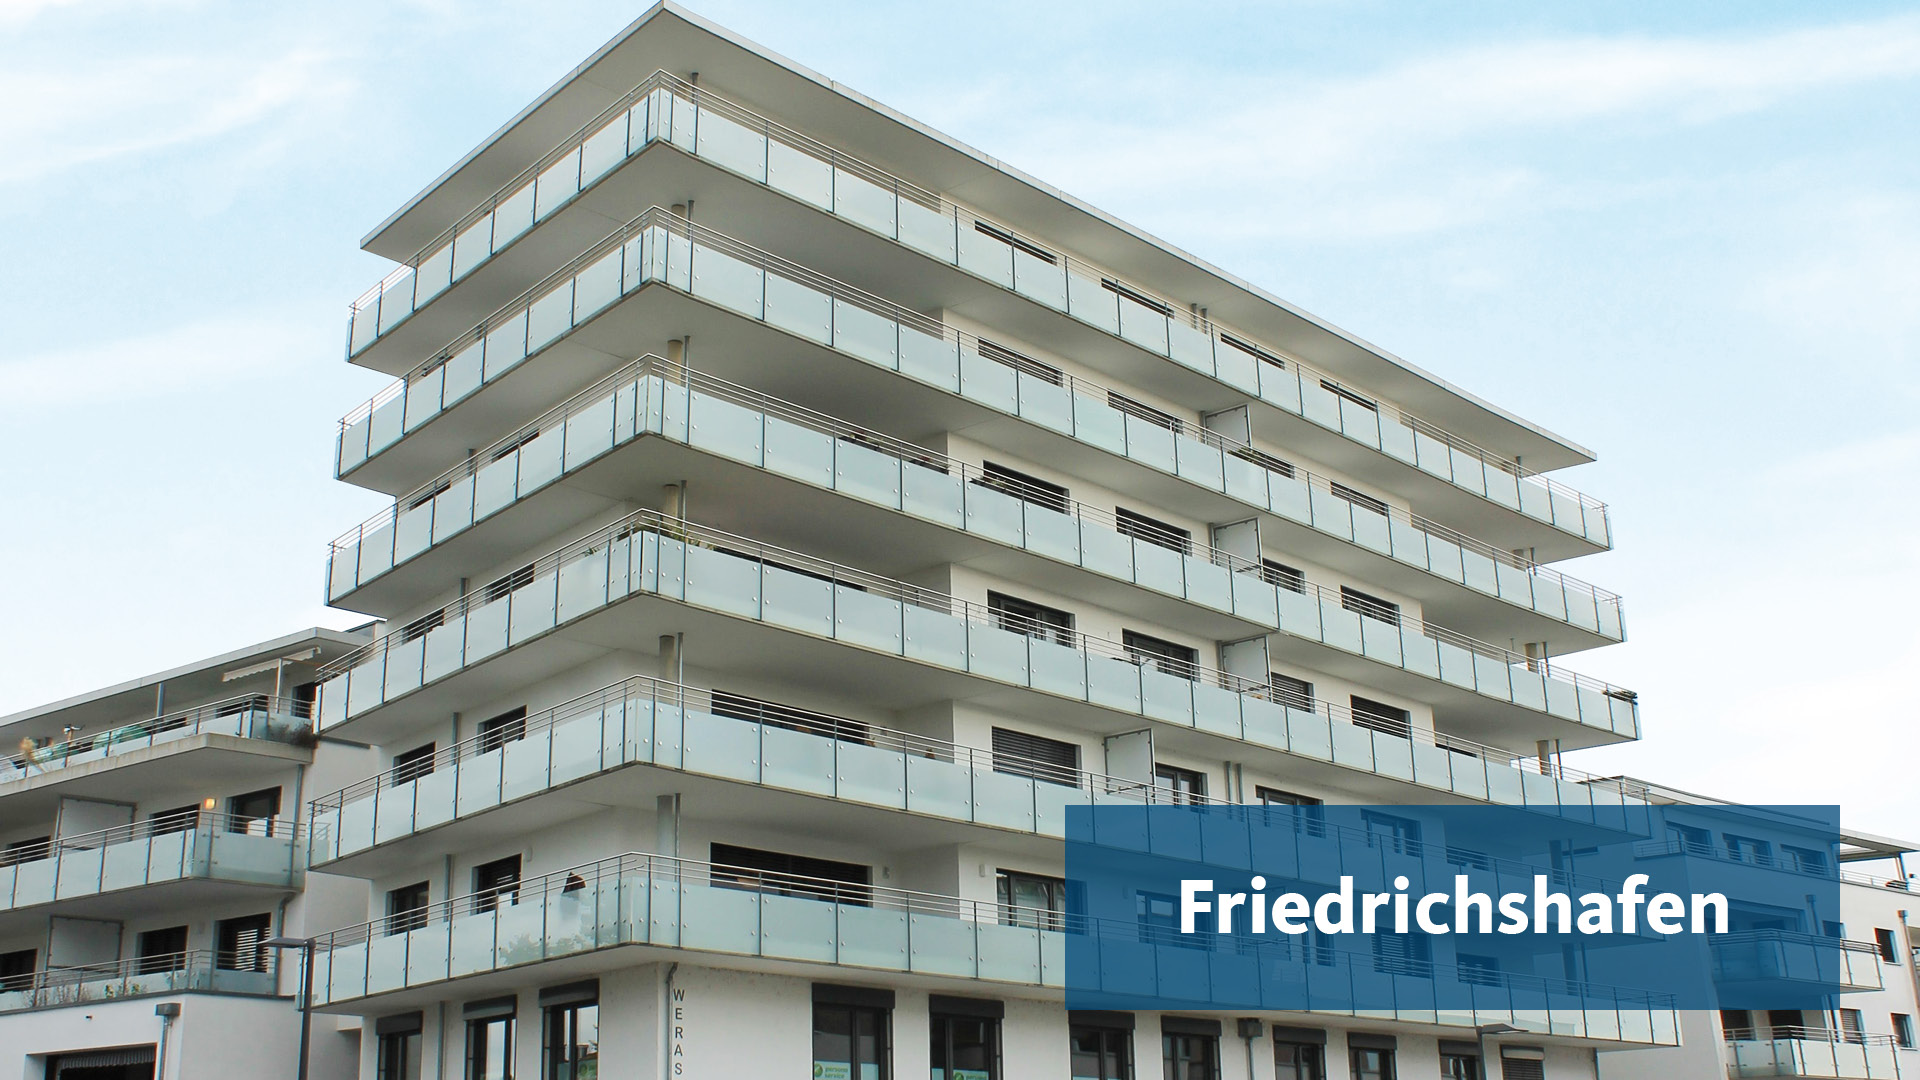 Friedrichshafen location